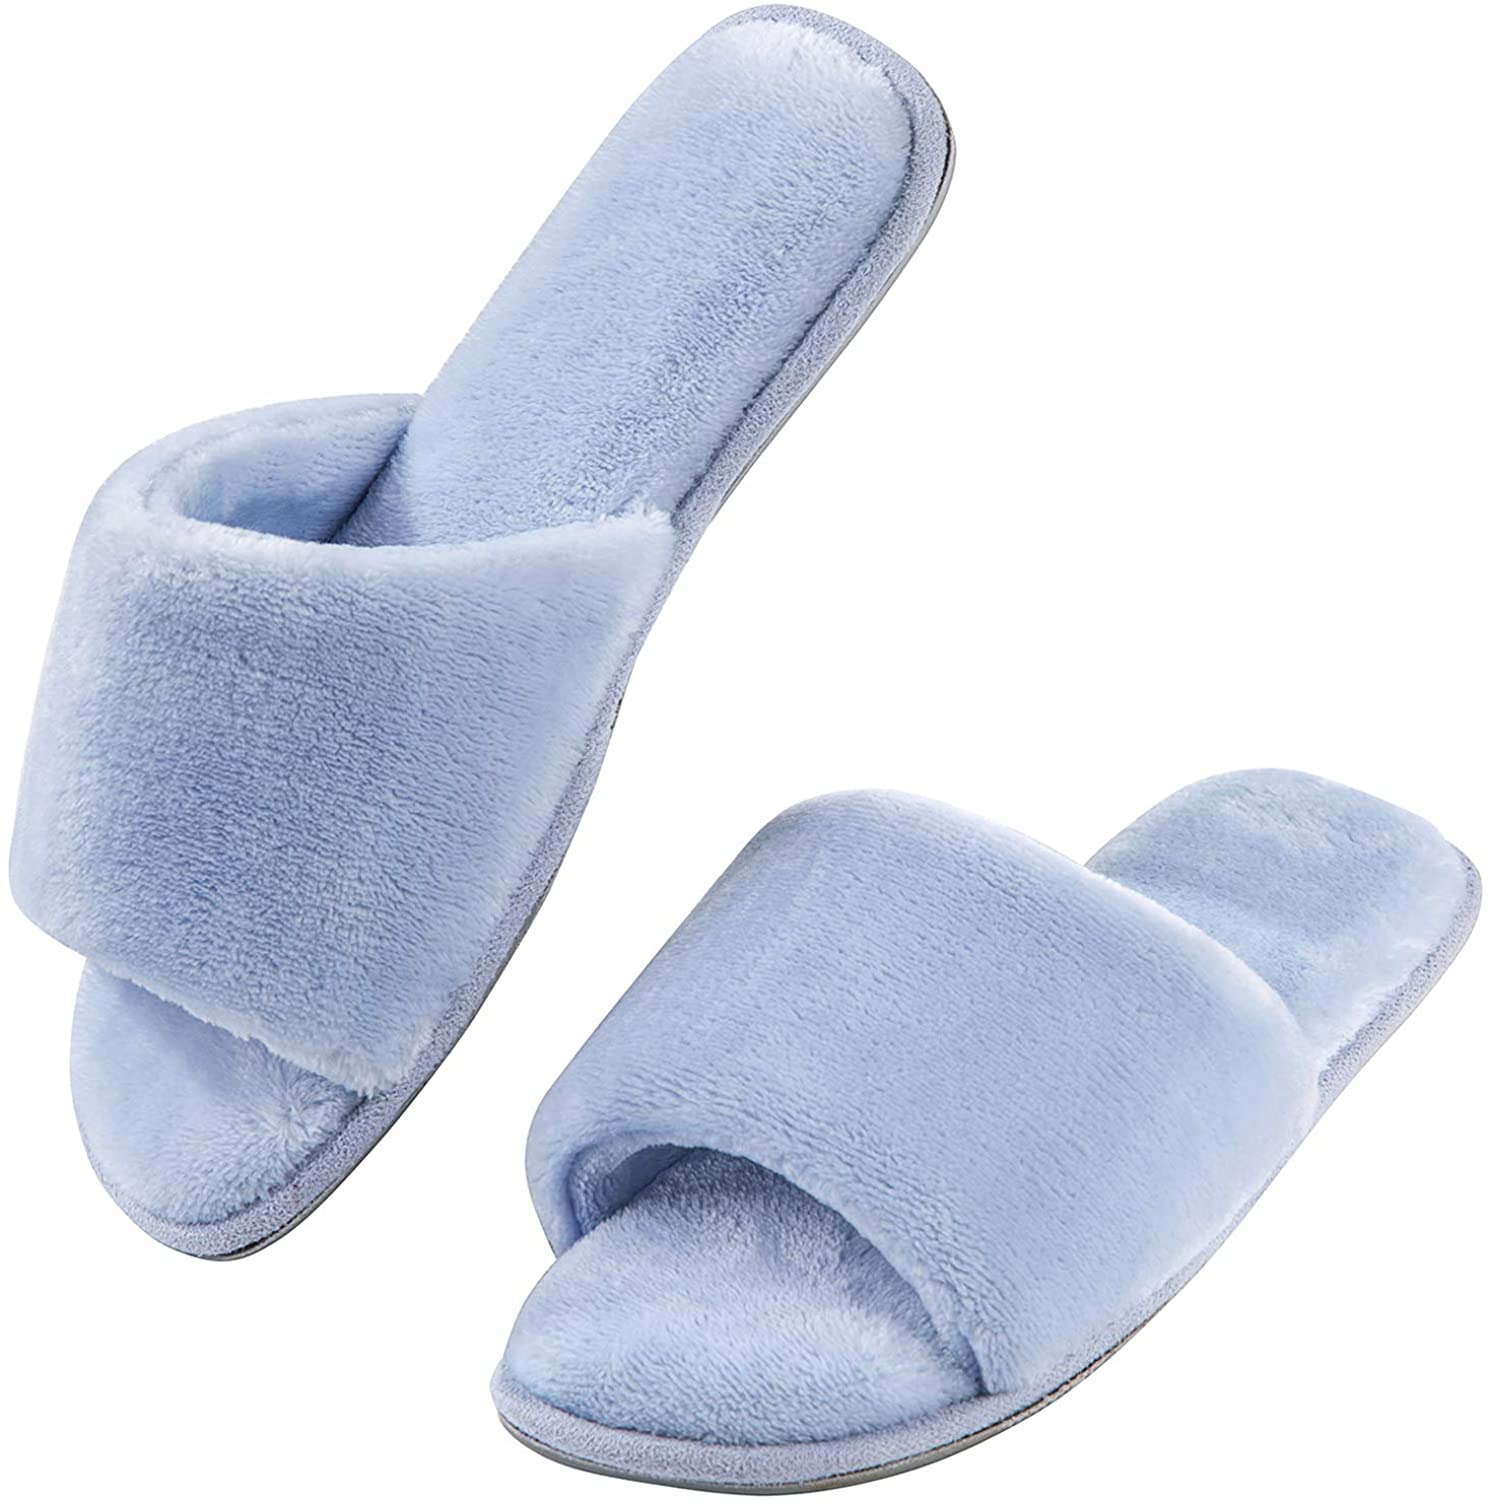 DL House Slippers for Women Open Toe Fluffy Womens Slippers Memory Foam Indoor Comfy Slip On Womens Bedroom Slippers Non-Slip Pink Gray Black White 